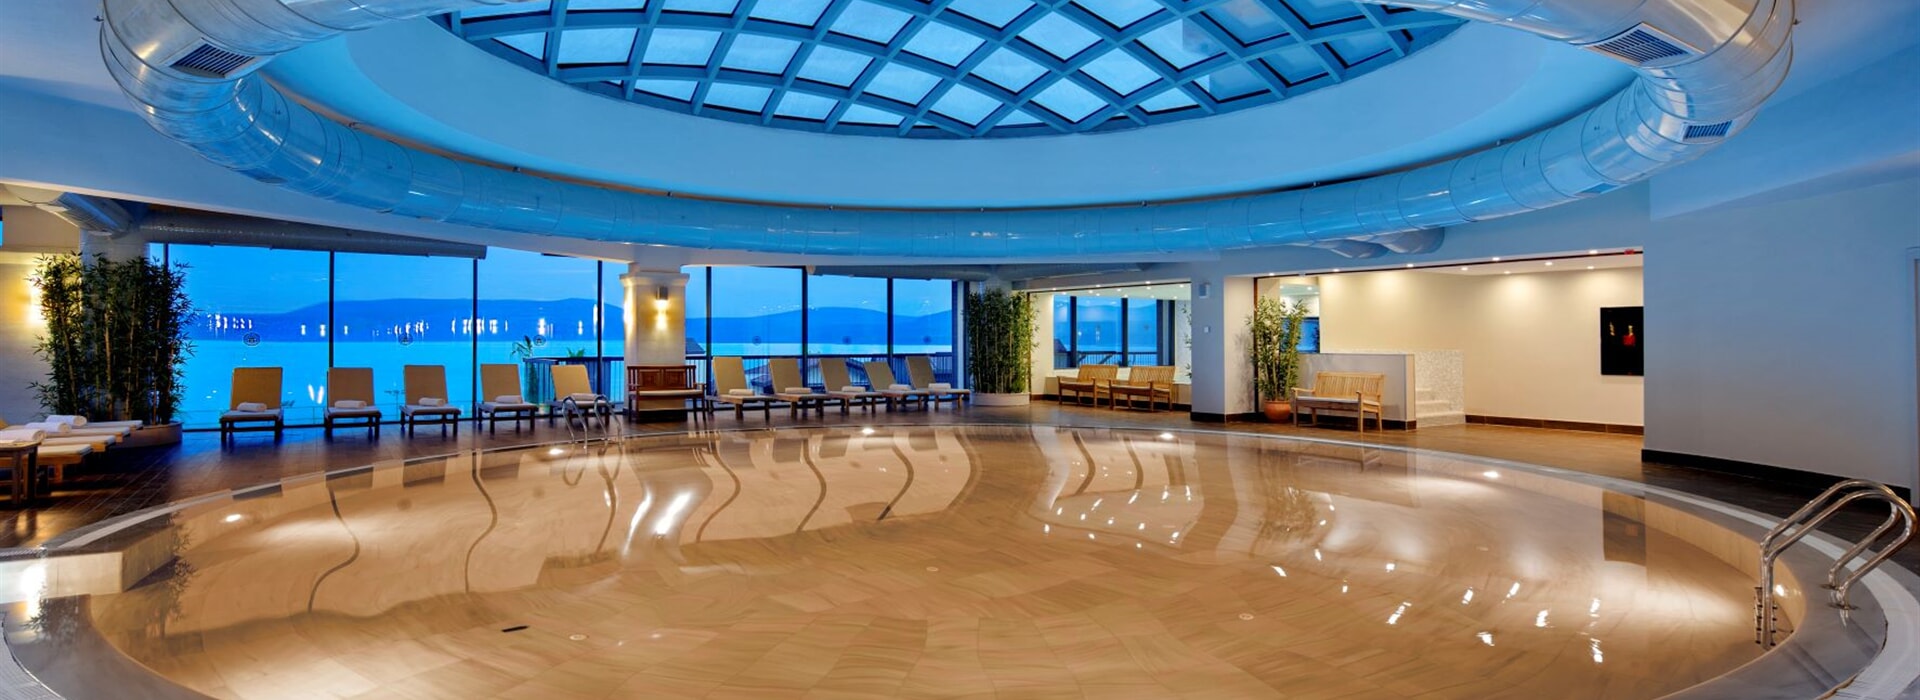 Royal Teos Thermal Resort Clinic & Spa – 5 yıldızlı termal otel ve konaklamalı fizik tedavi, rehabilitasyon merkezi